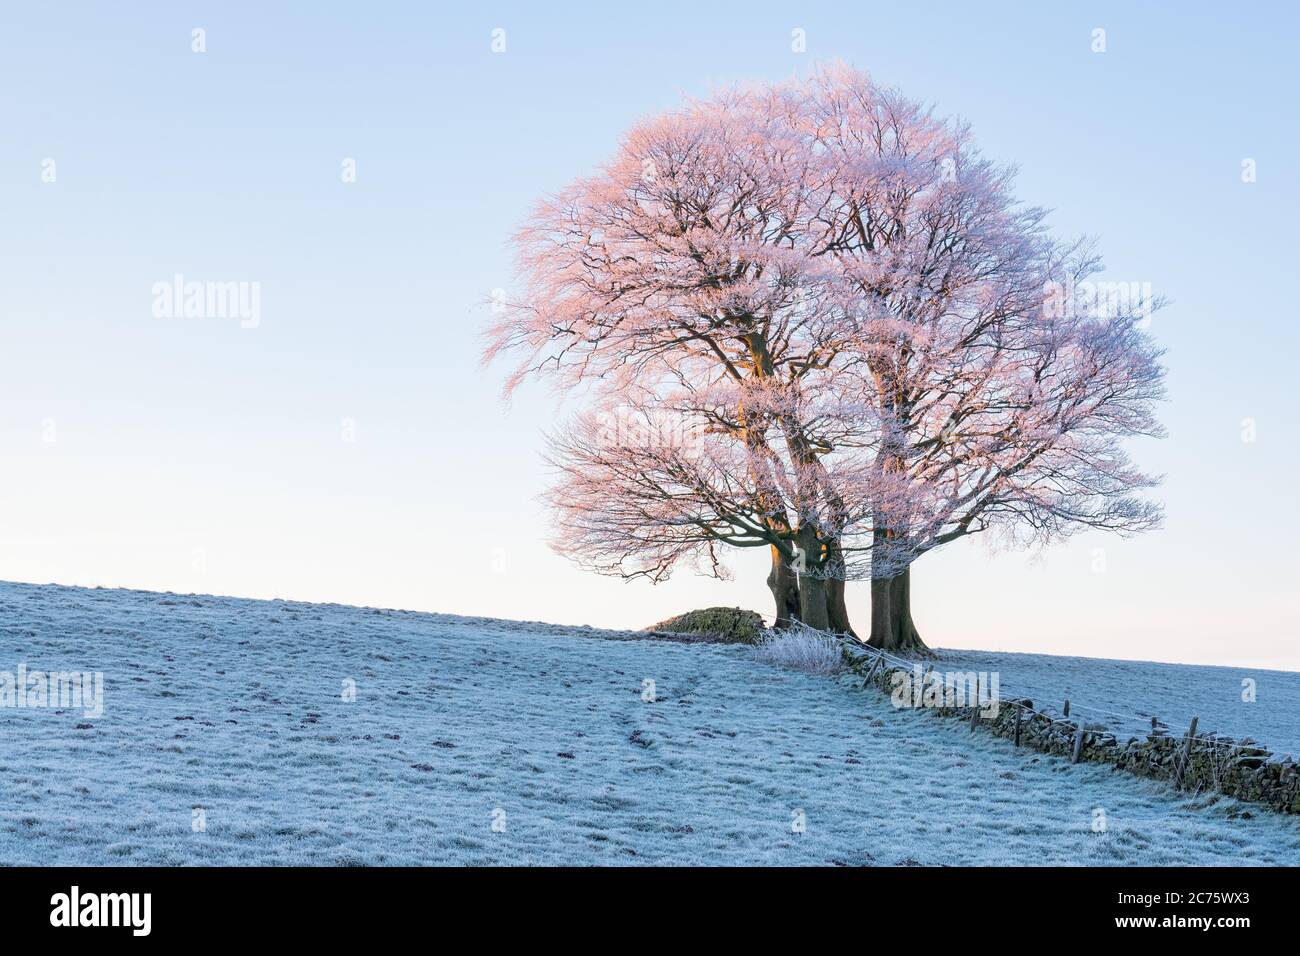 Un bosquet d'arbres au-dessus de Guiseley rose brille comme le soleil levant attrape le frosty branches, donnant l'illusion de s'épanouir sur un matin d'hiver glacial. Banque D'Images